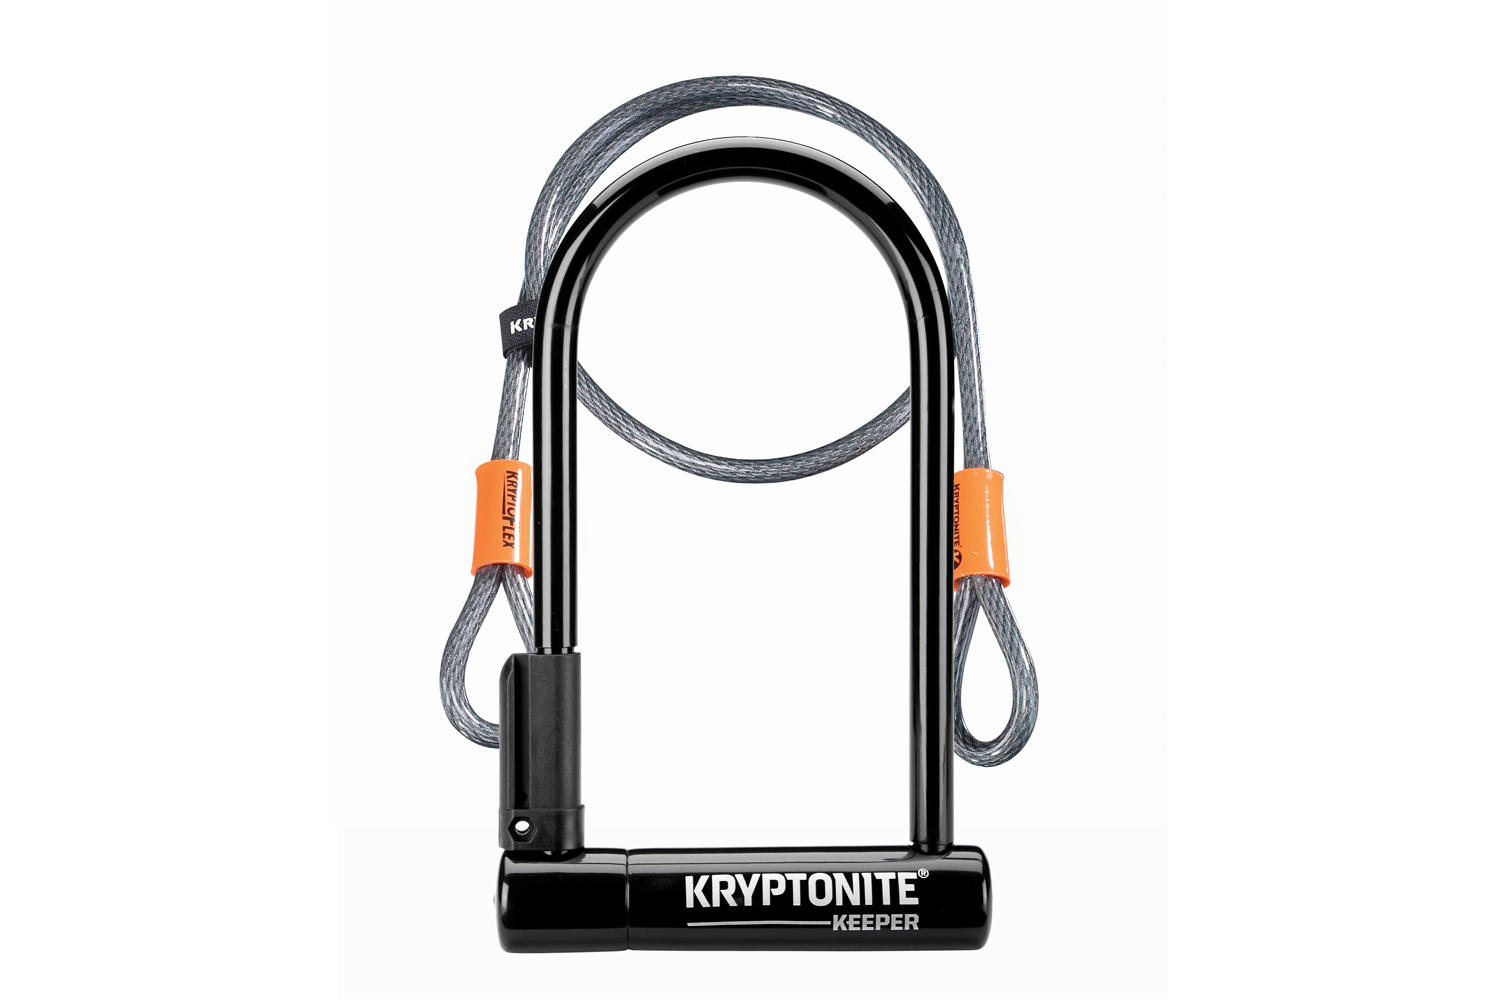 Kryptonite U-Lock Bicycle Lock